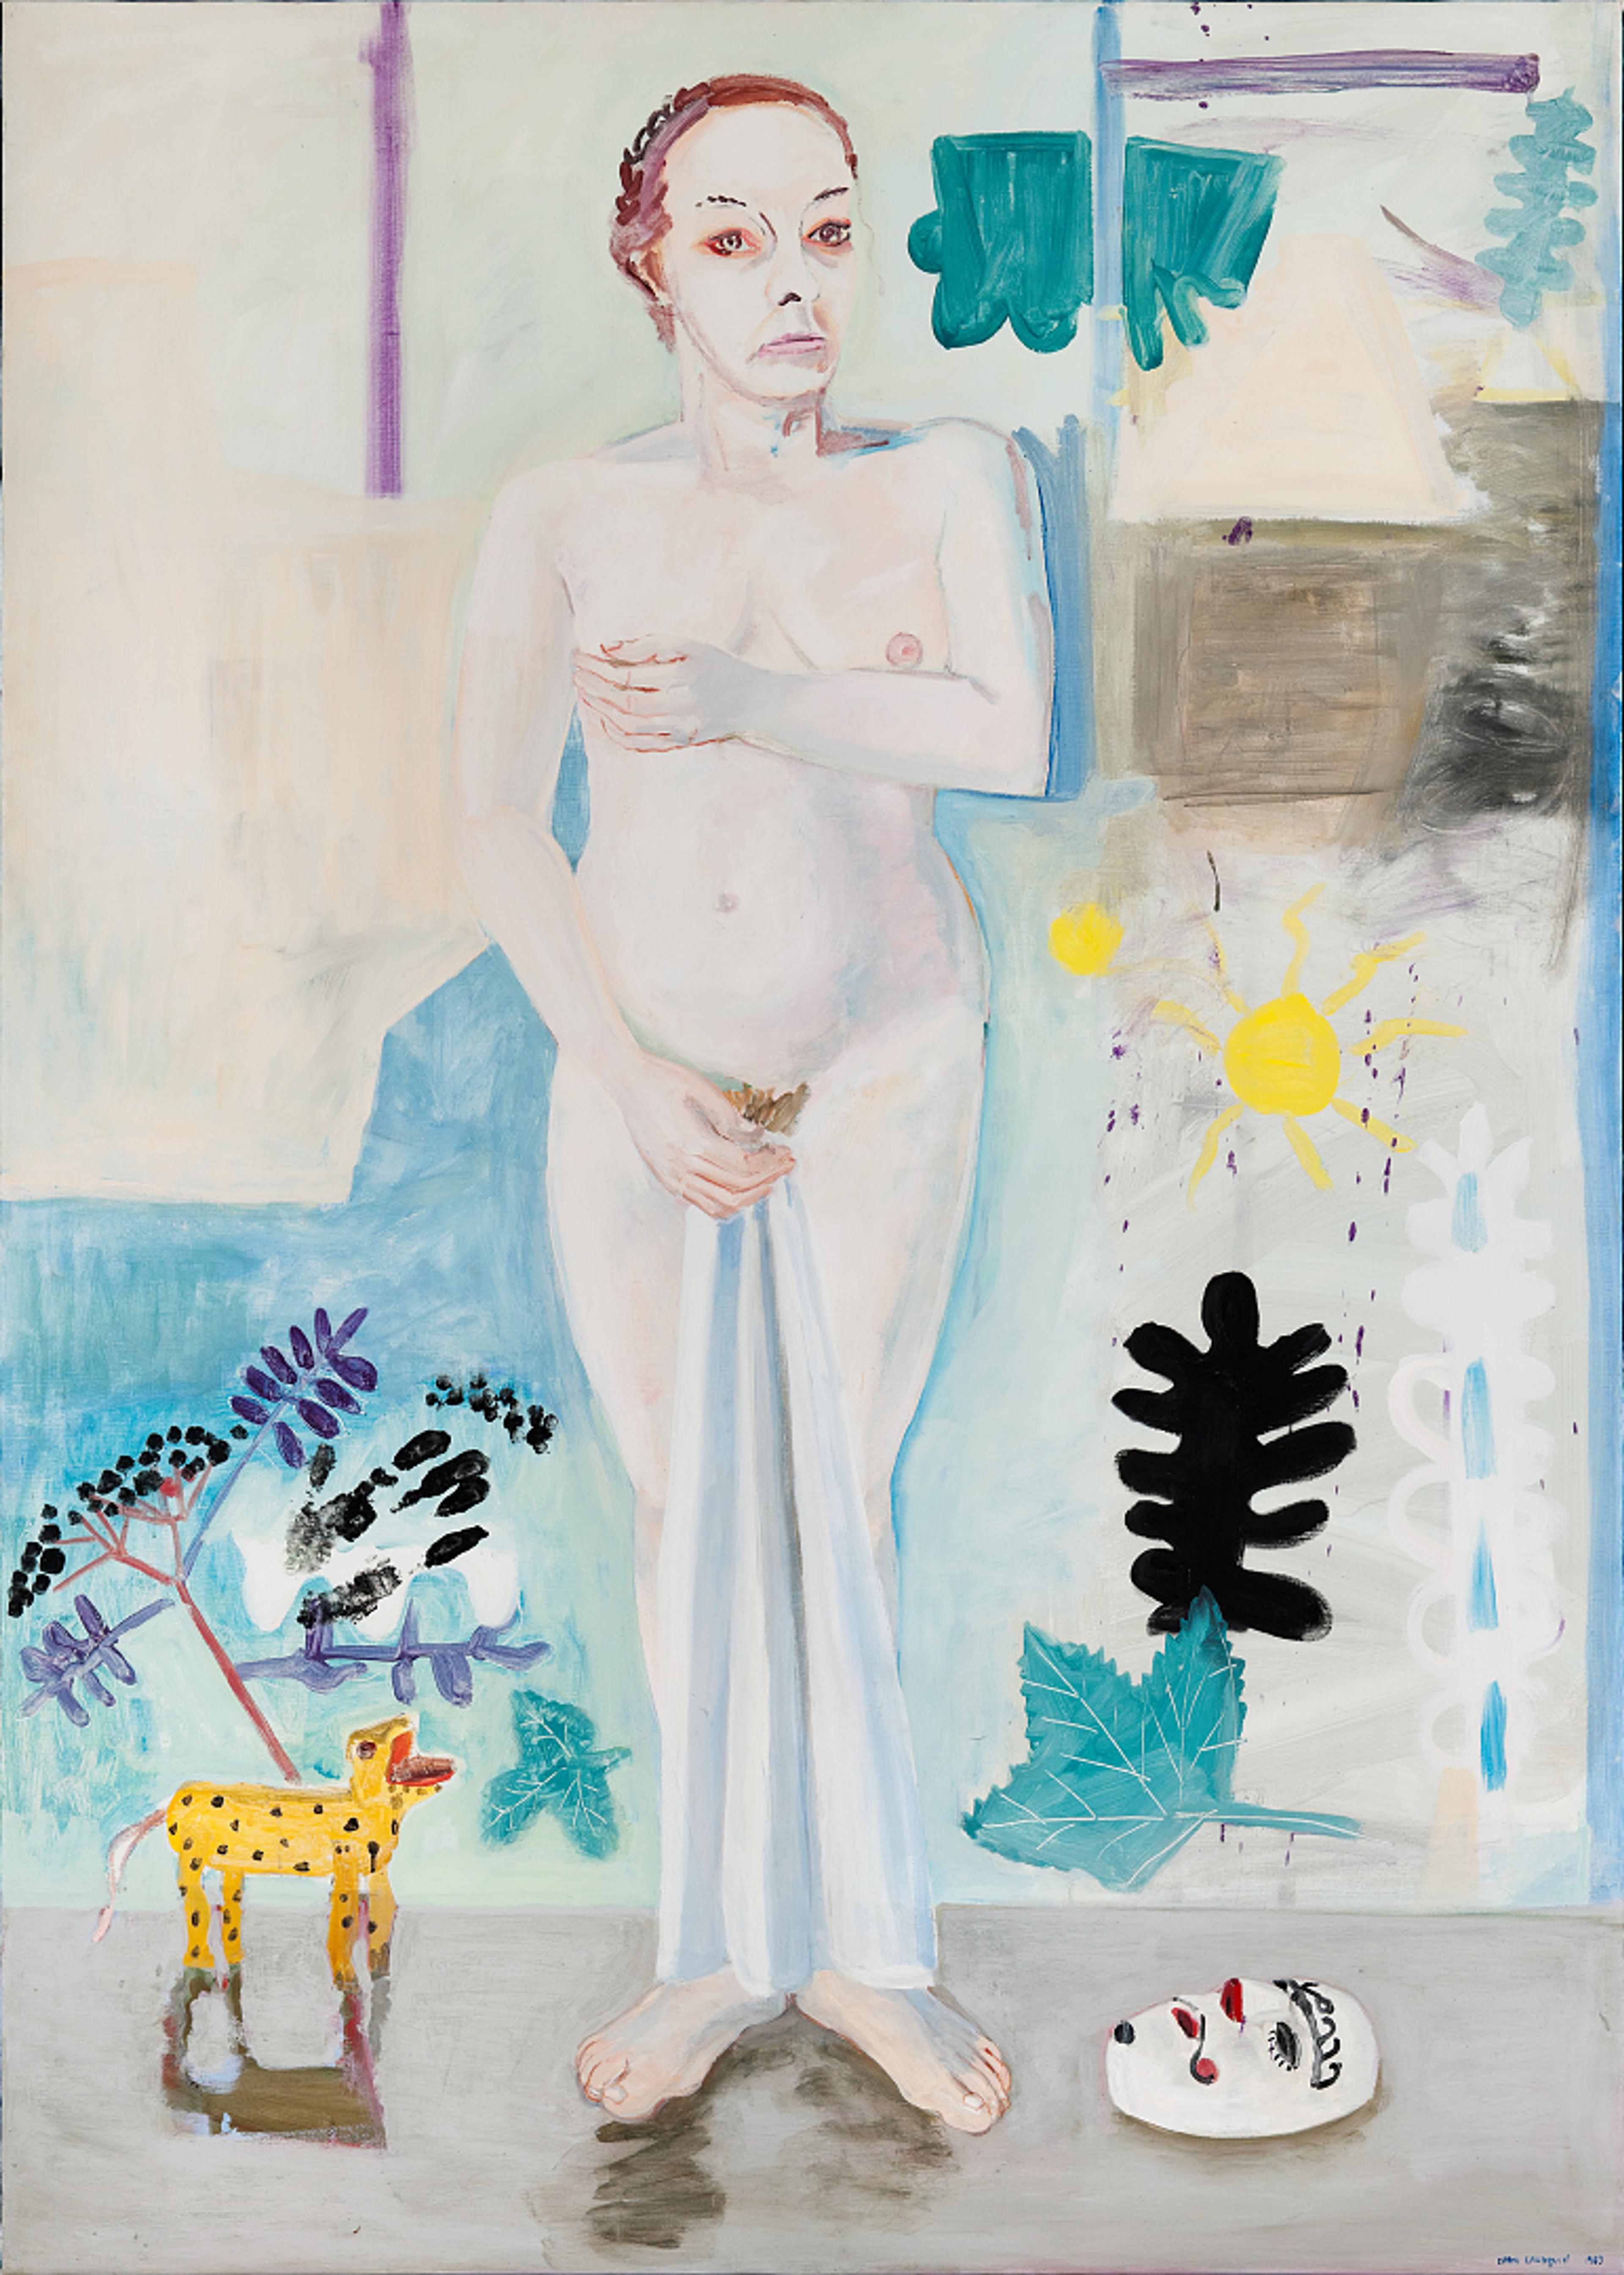 Et maleri som viser en avkledd kvinne, som delvis forsøker skjule seg. Det er malt i kjølige toner i hvitt og blått. 